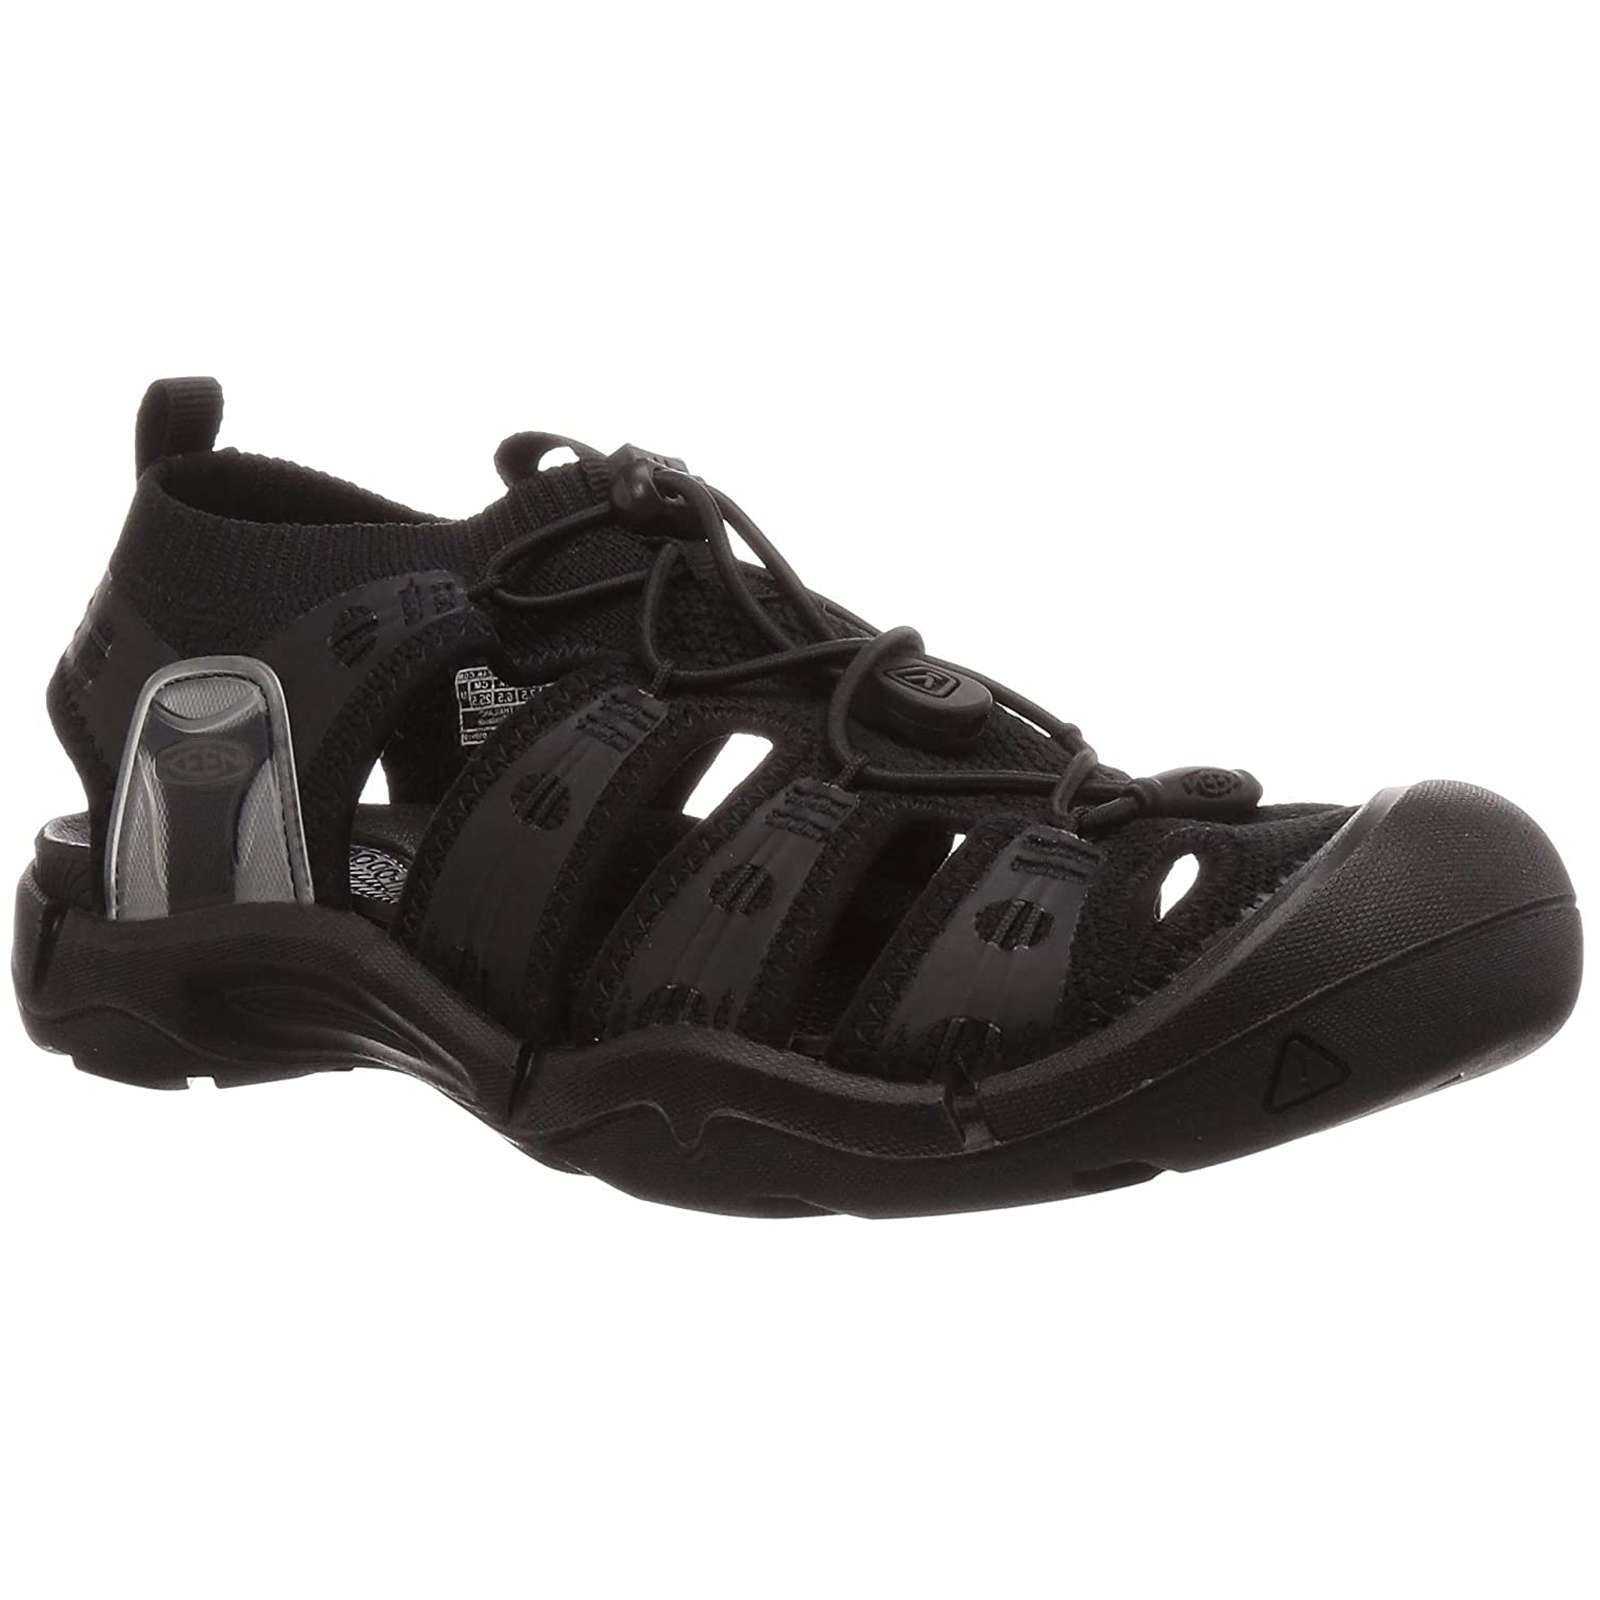 Keen Evofit One Textile Men's Hiking Sandals#color_triple black